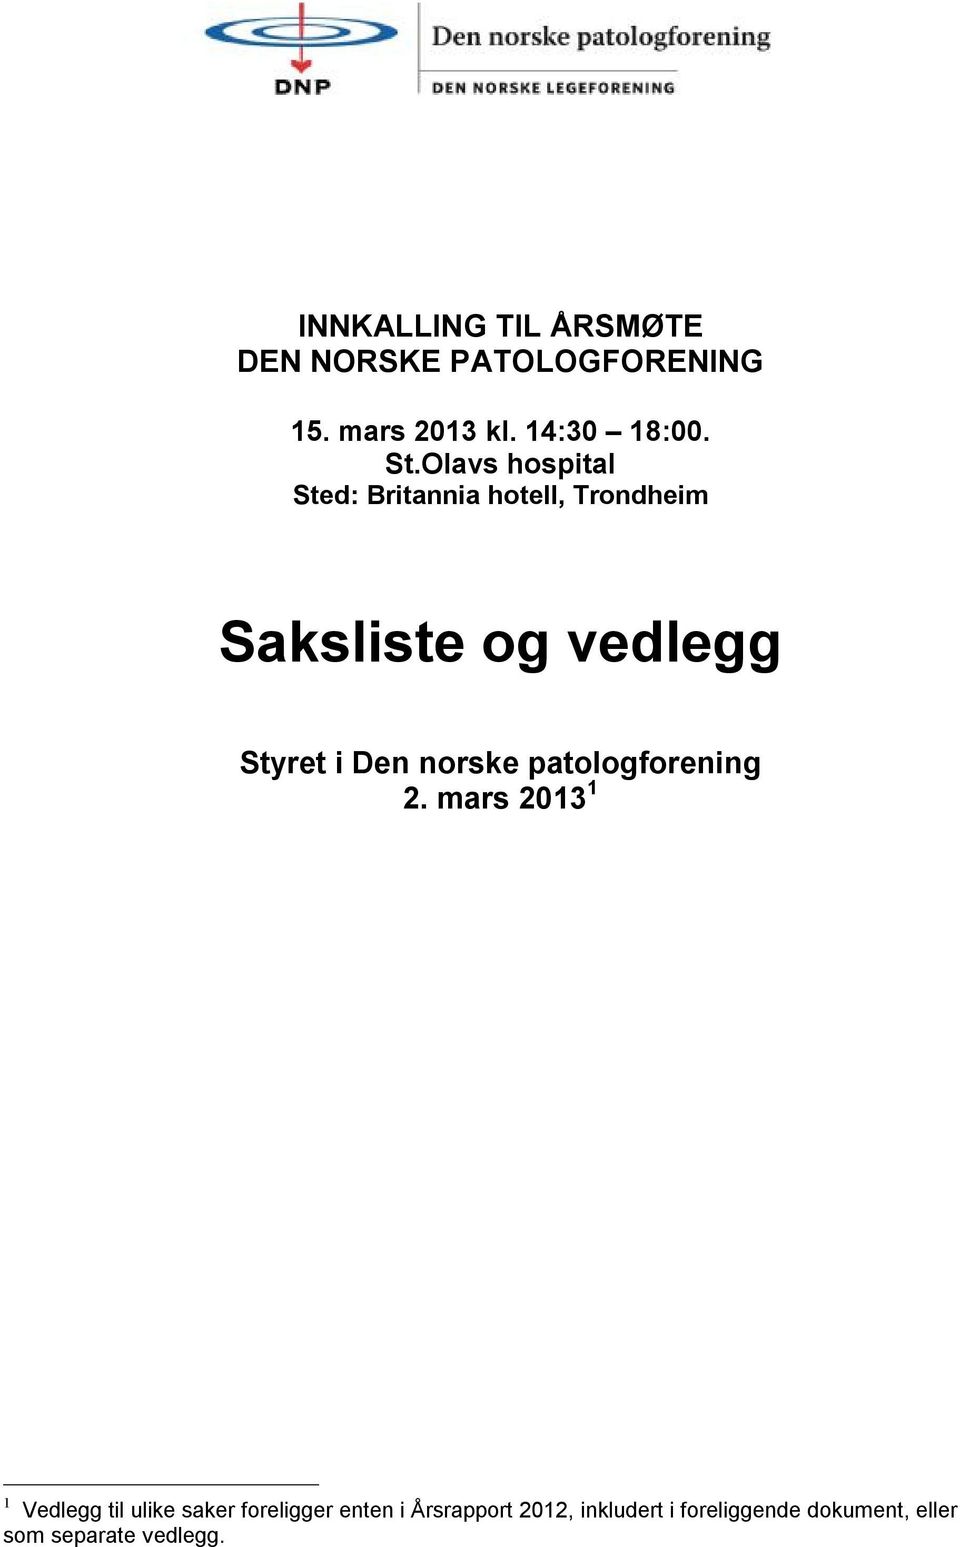 Den norske patologforening 2.